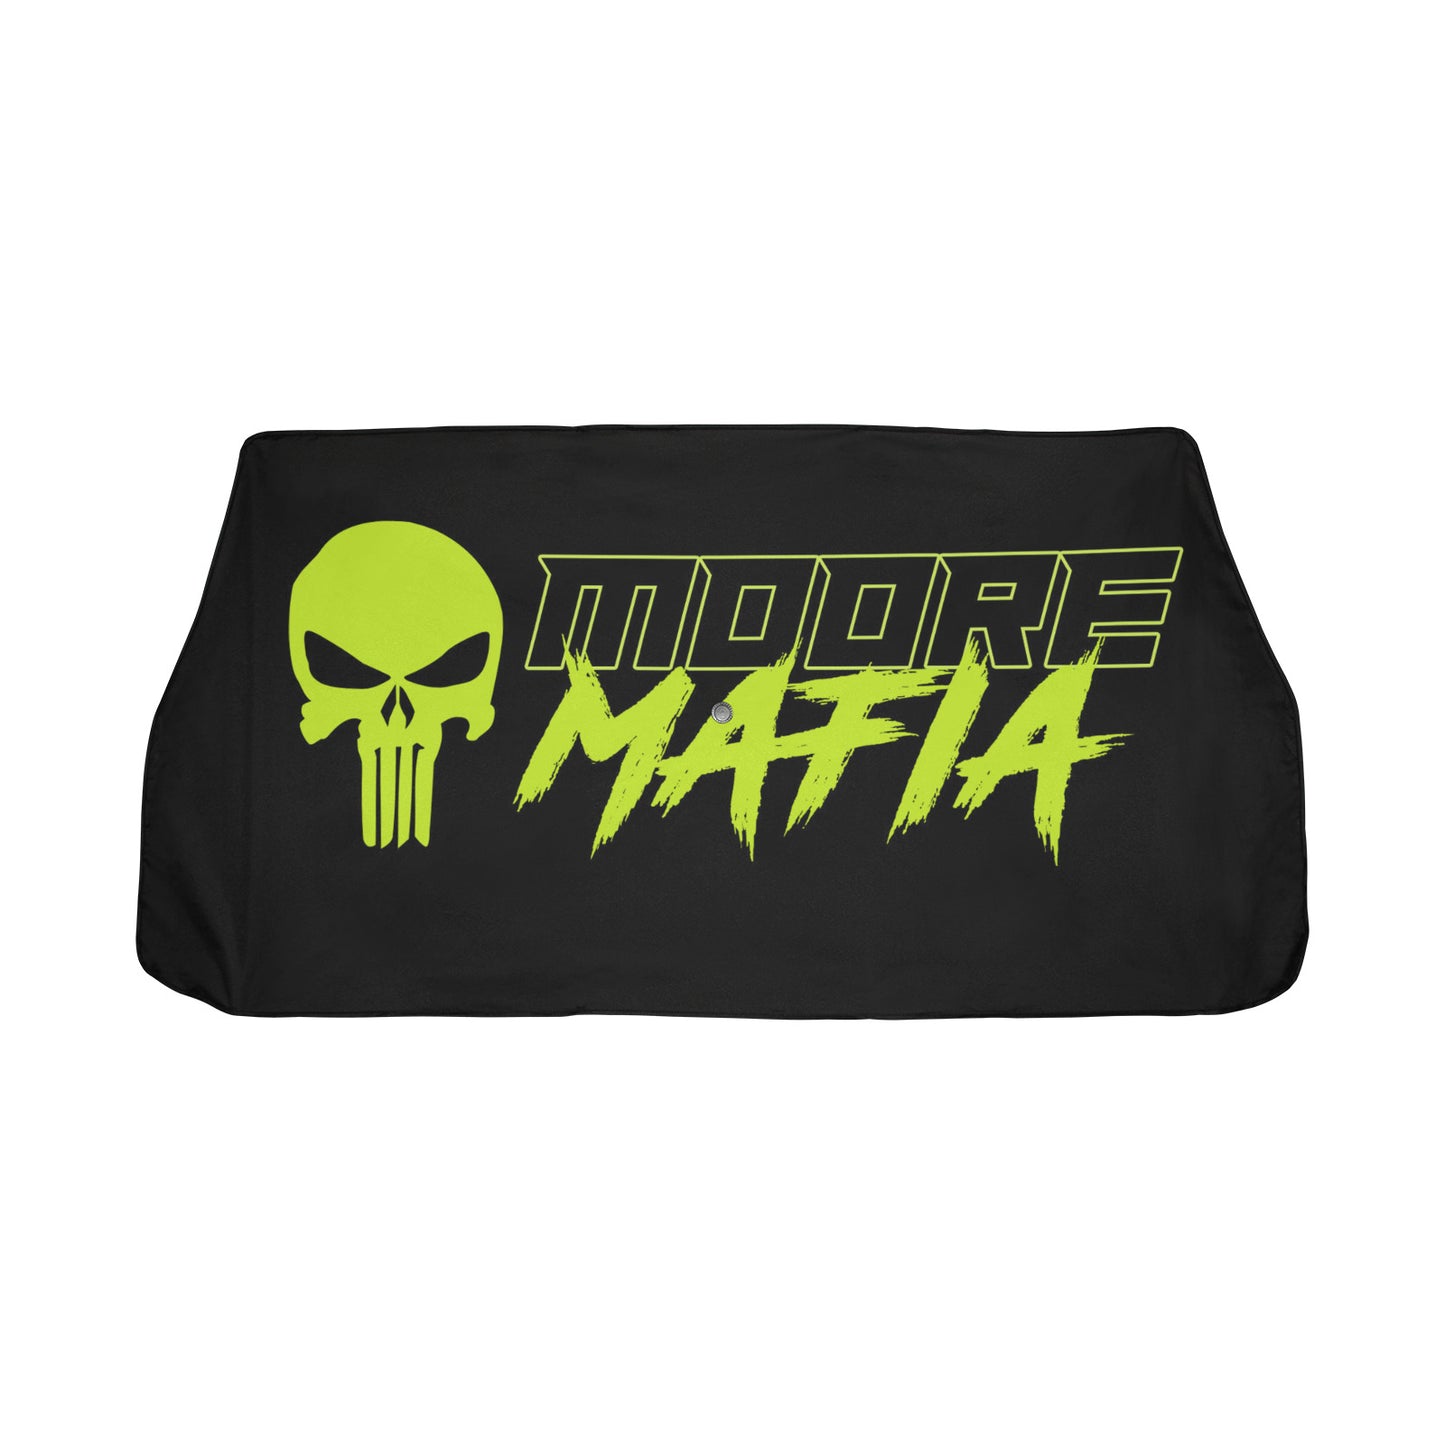 Moore Mafia Car Sun Shade Car Sun Shade Umbrella 58"x29"